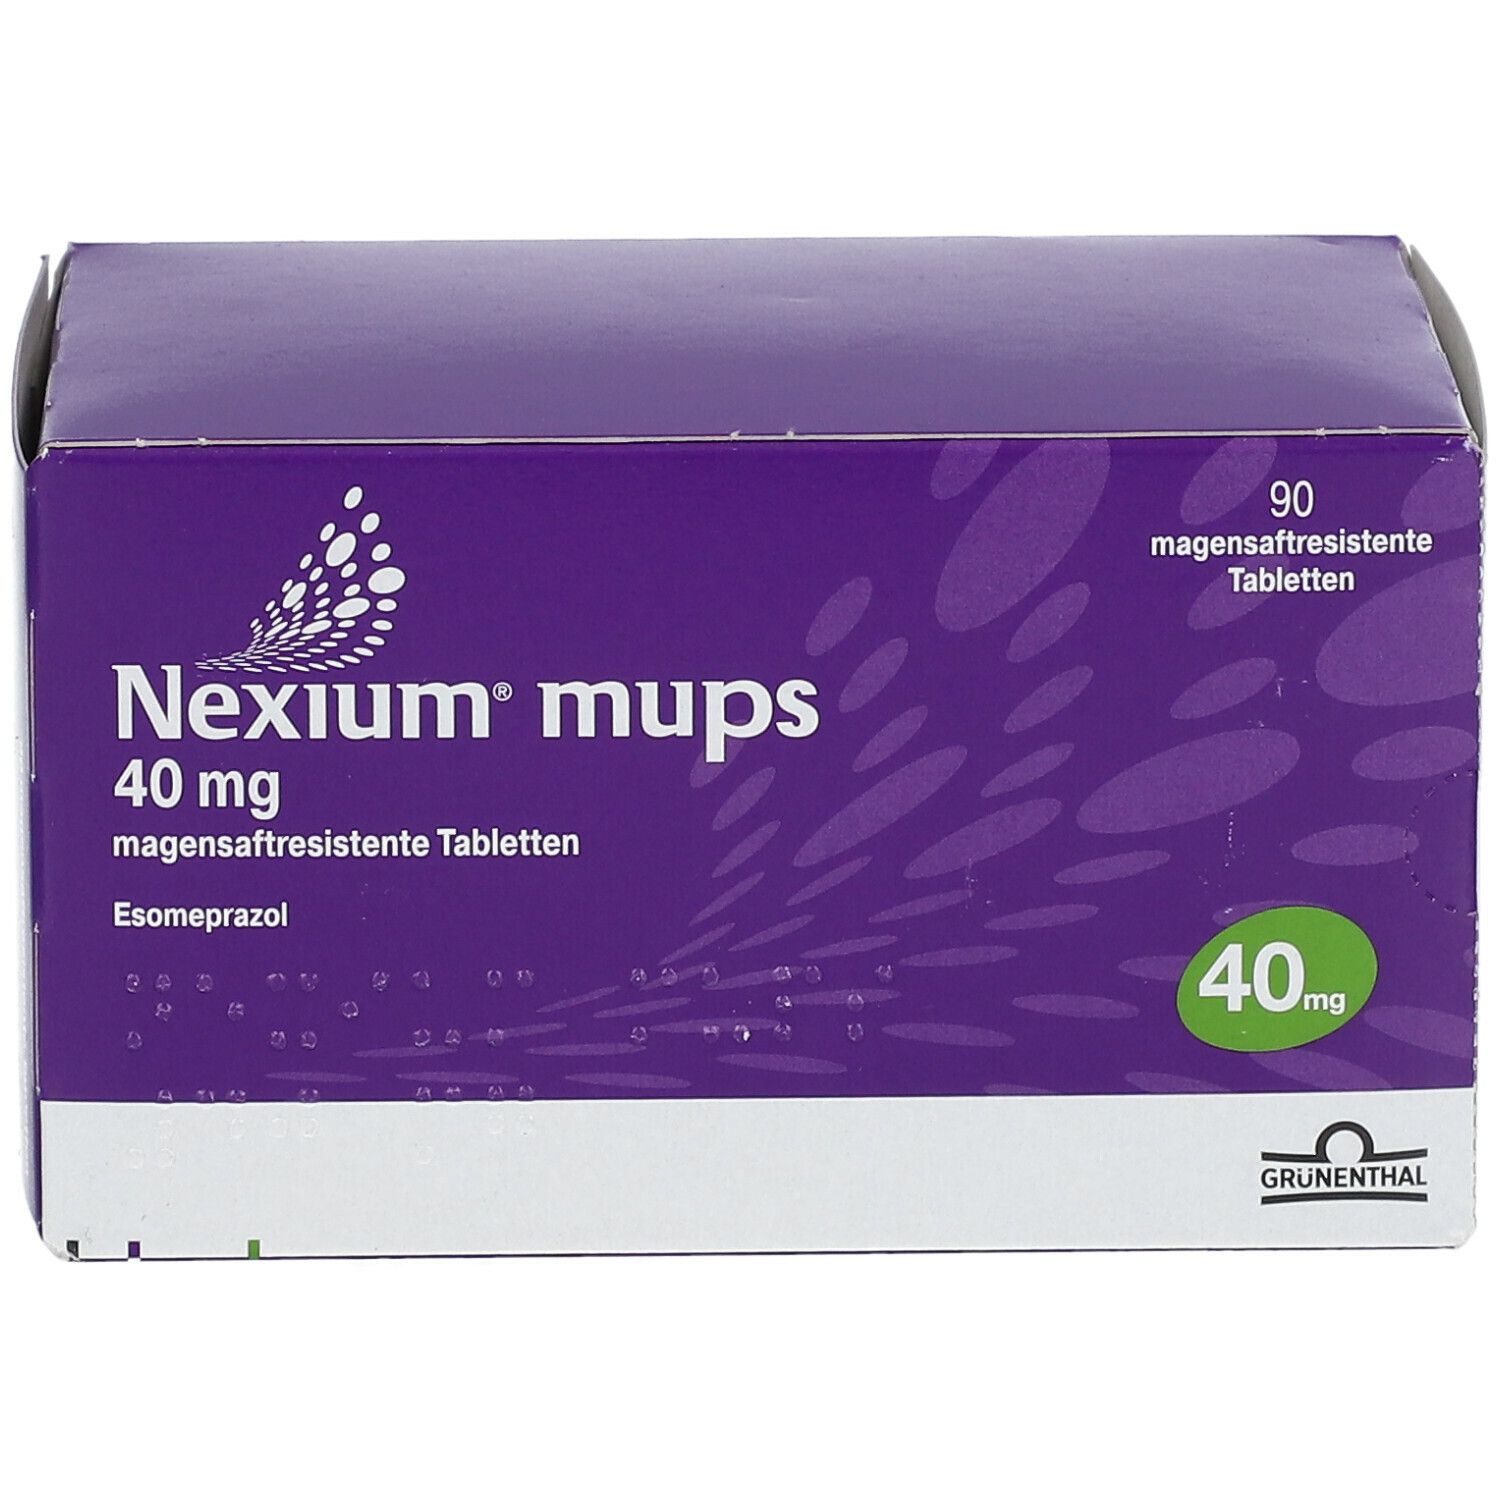 Nexium® mups 40 mg